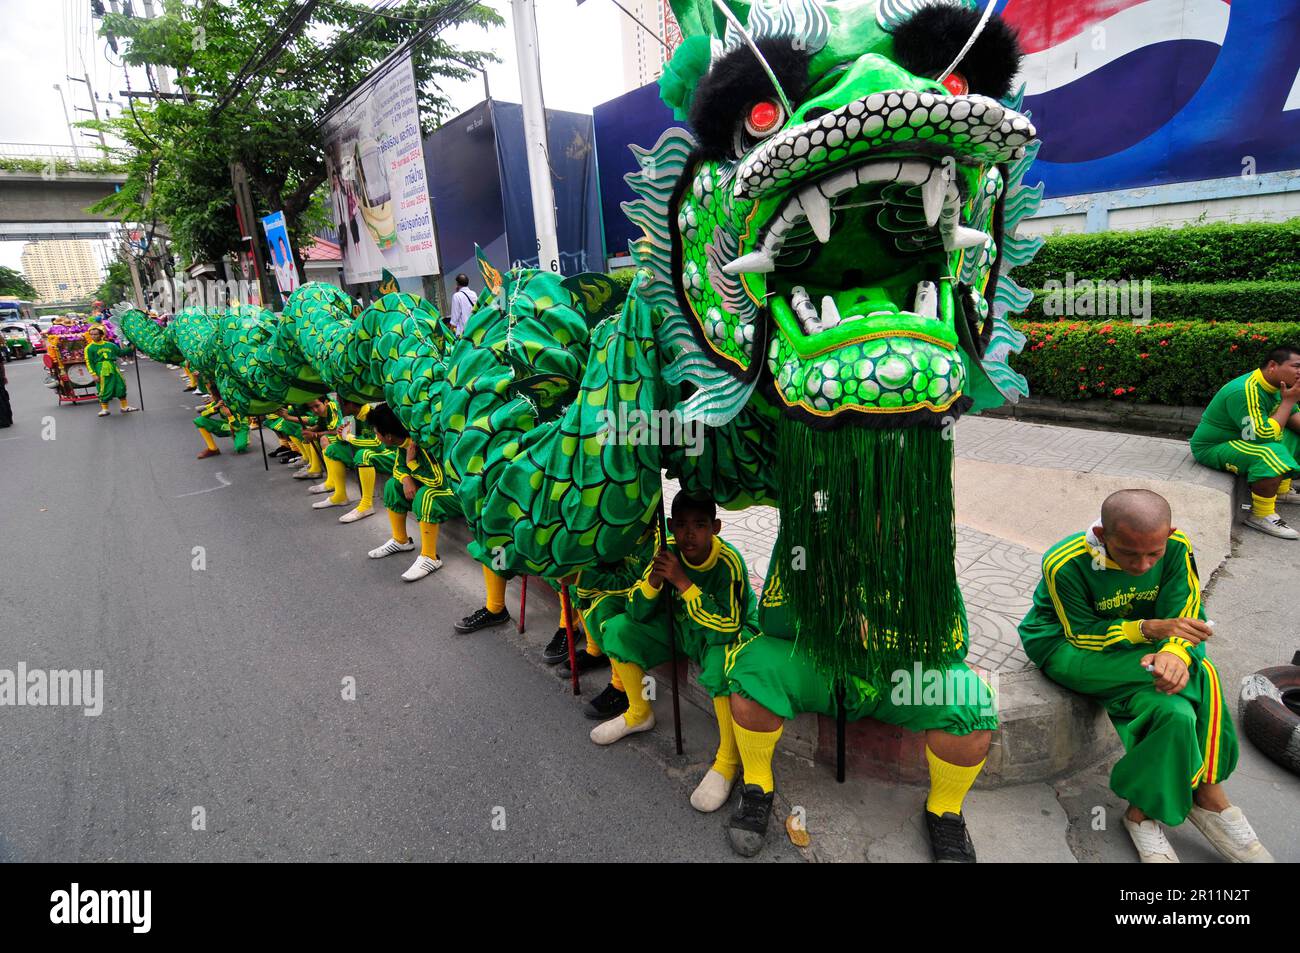 Une parade colorée le long de Charoen Nakhon Rd à Bangkok, en Thaïlande. Banque D'Images